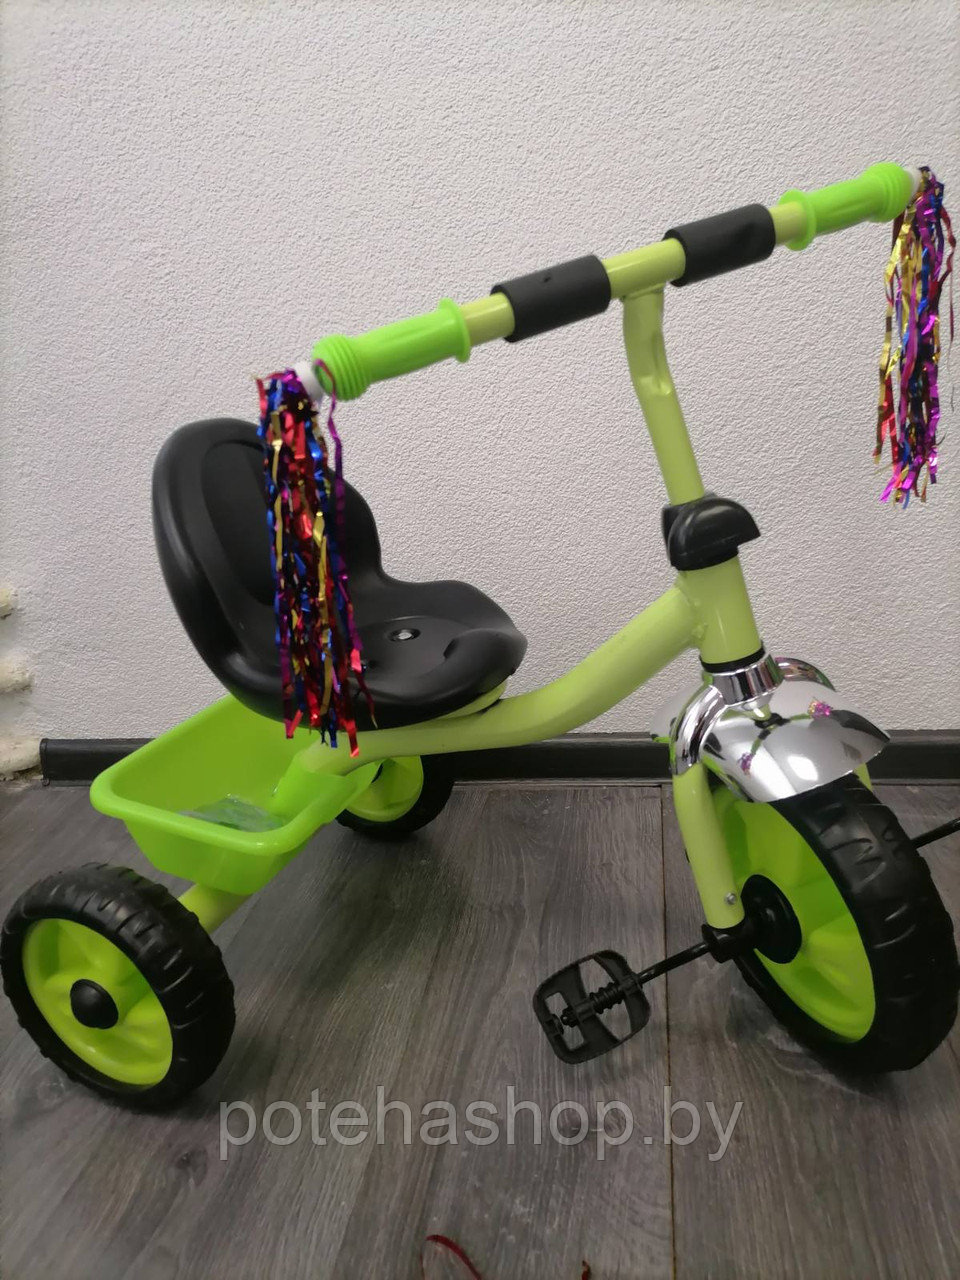 Велосипед детский трехколесный Trike 1-23 зеленый